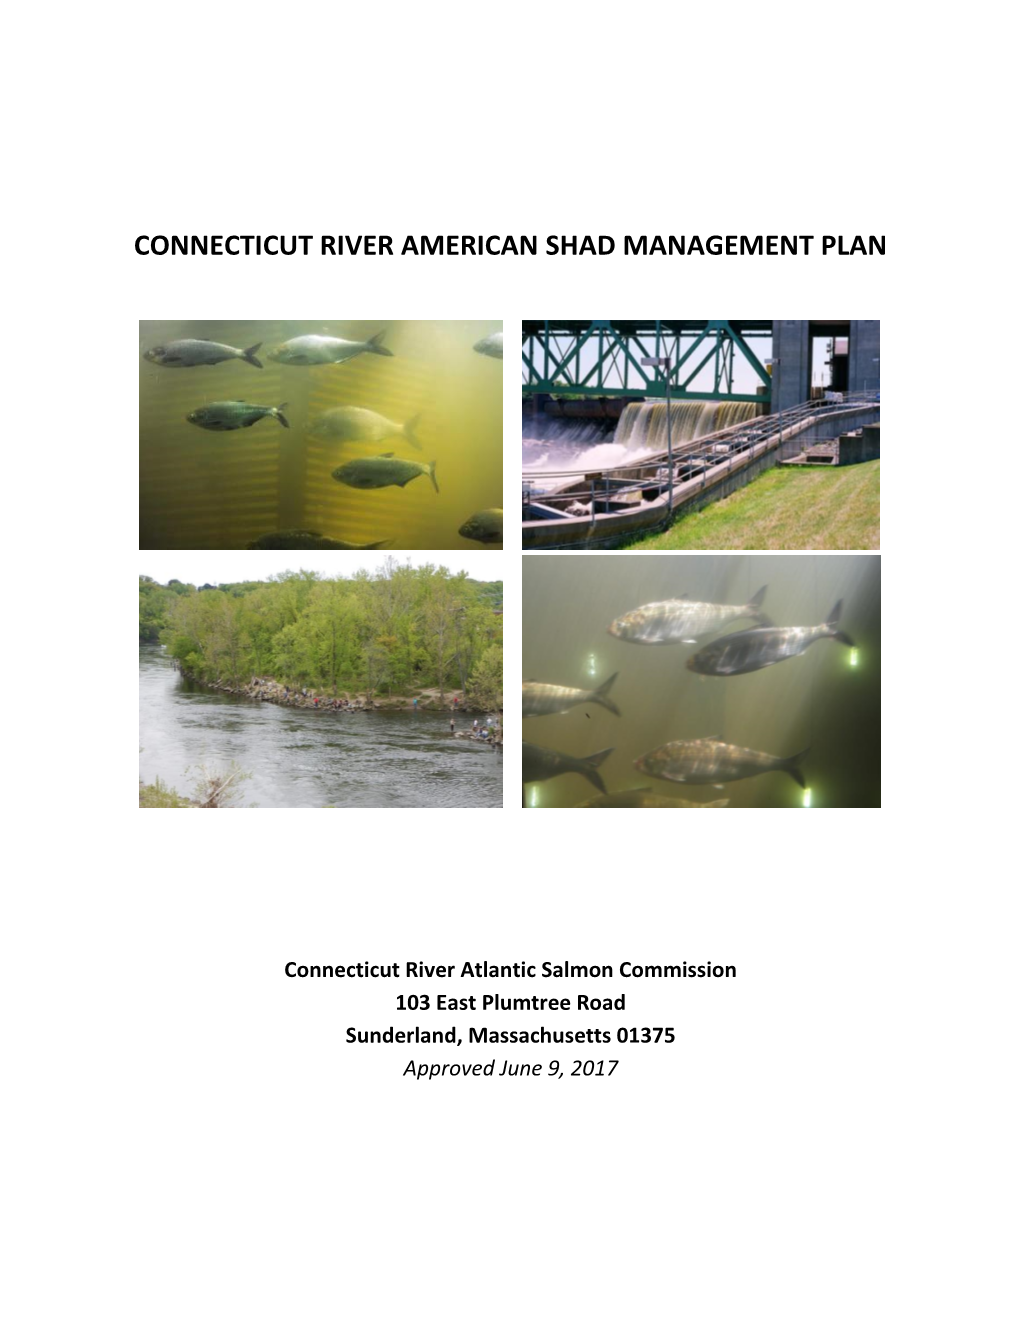 Connecticut River Shad Management Plan